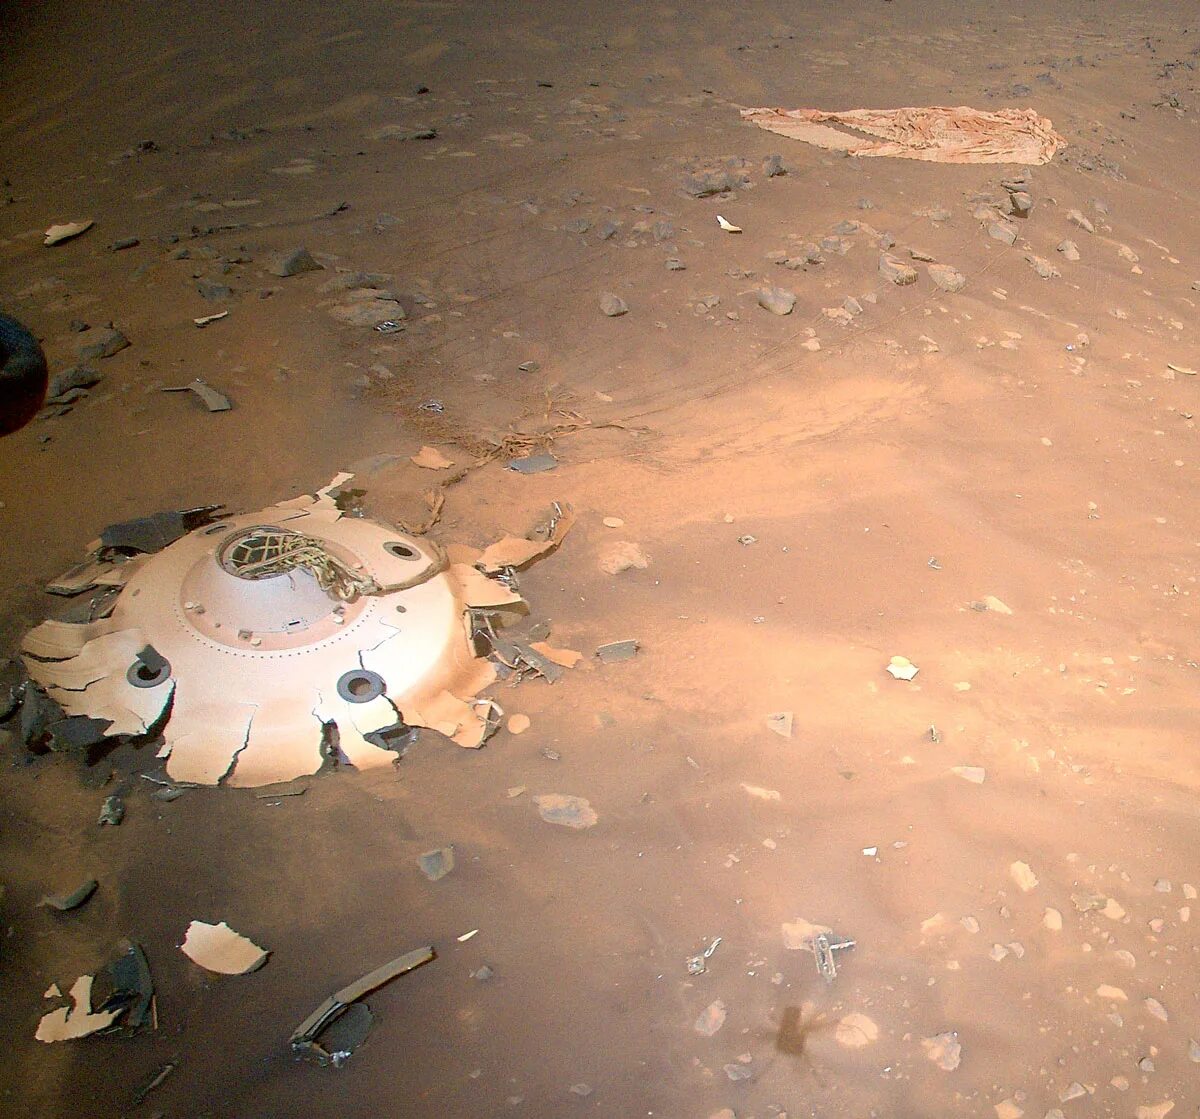 2023 11 08. Снимки Марса НАСА 2021. Марсоход НАСА perseverance. Марсианский вертолет НАСА ingenuity. Снимки с марсохода 2022.